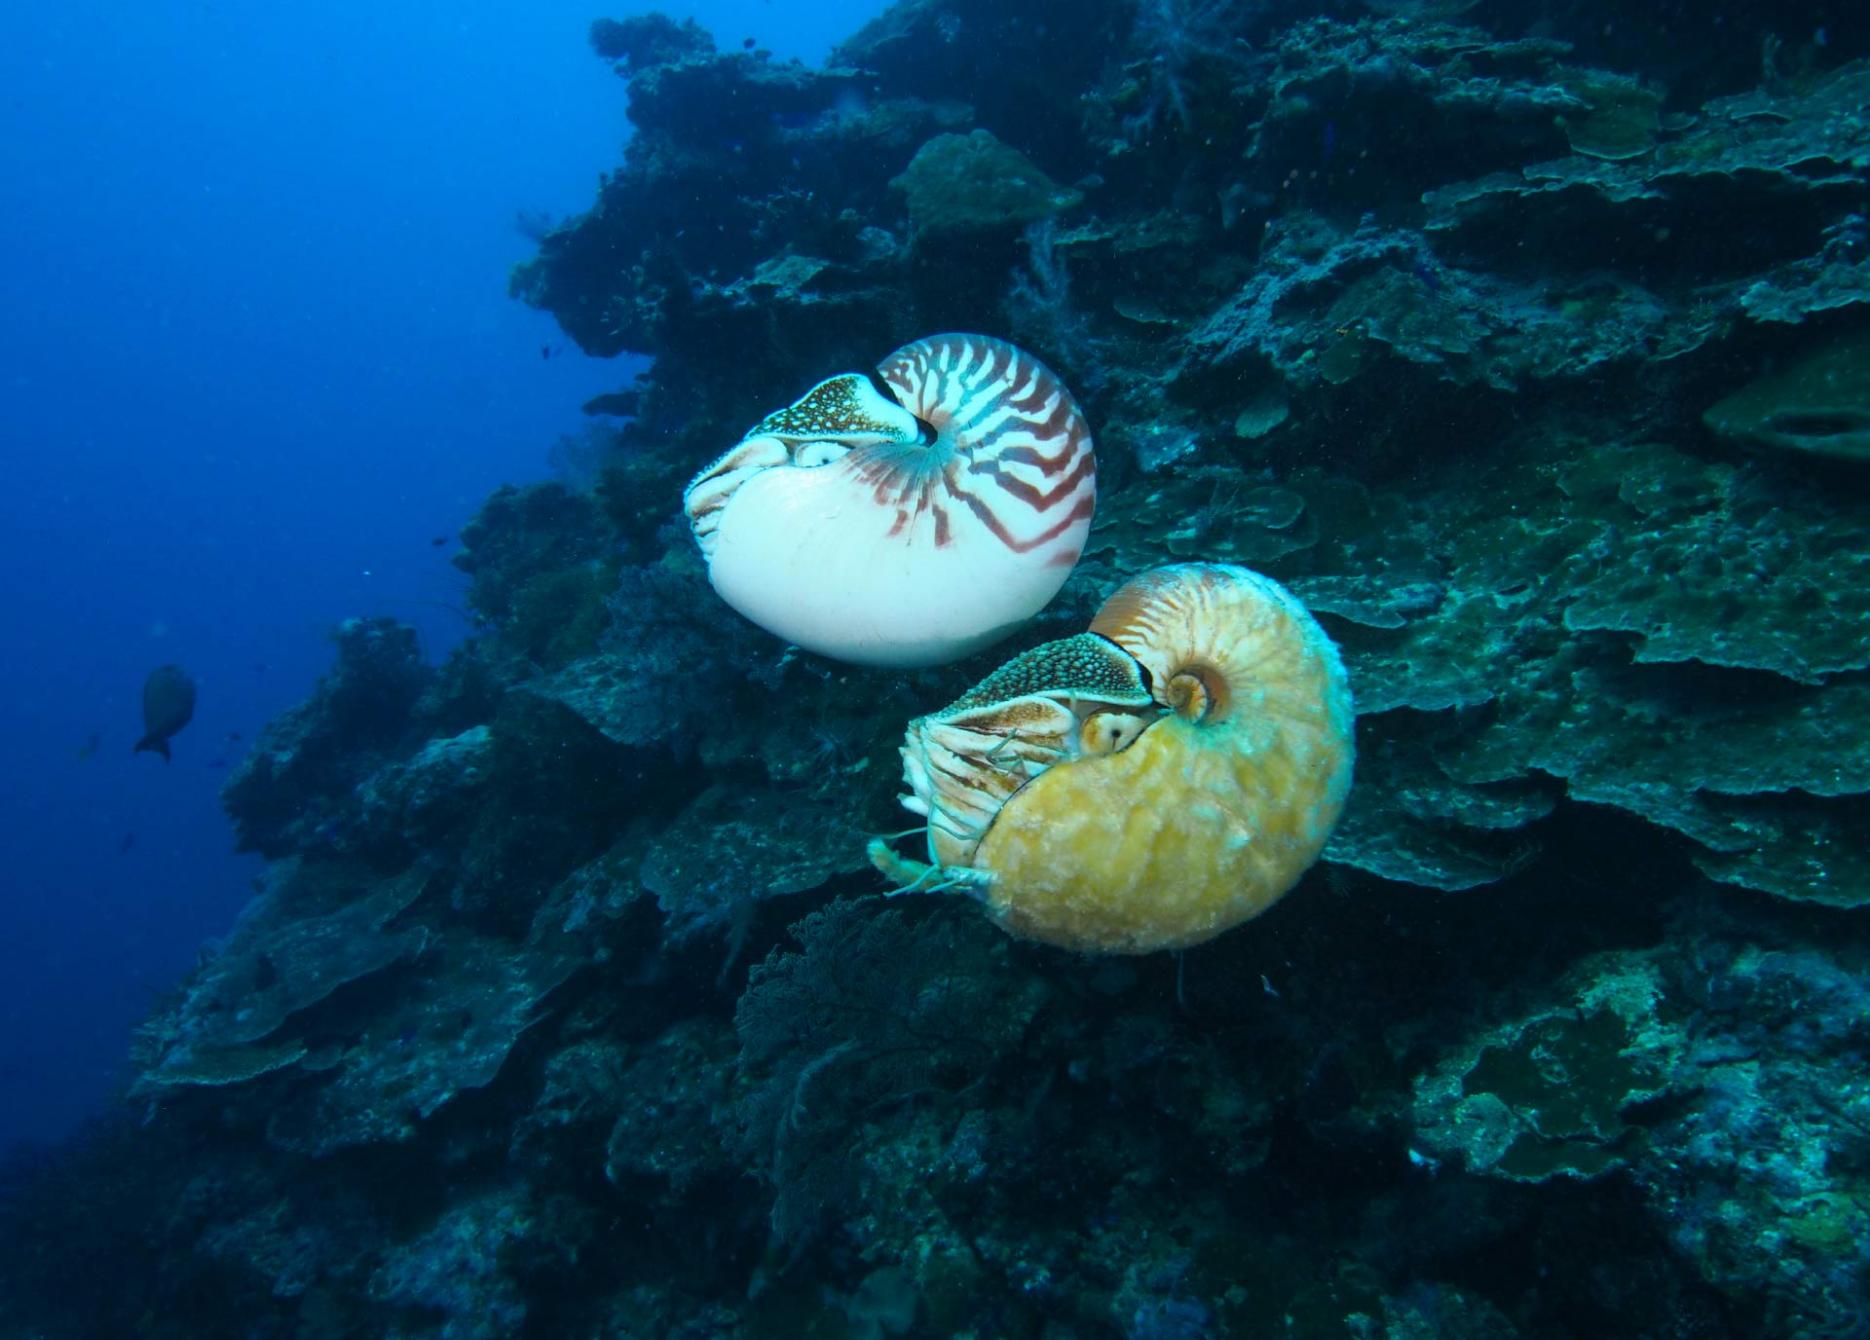 美国科学家海底发现超稀有海洋生物活化石异鹦鹉螺(Allonautilus scrobiculatus)